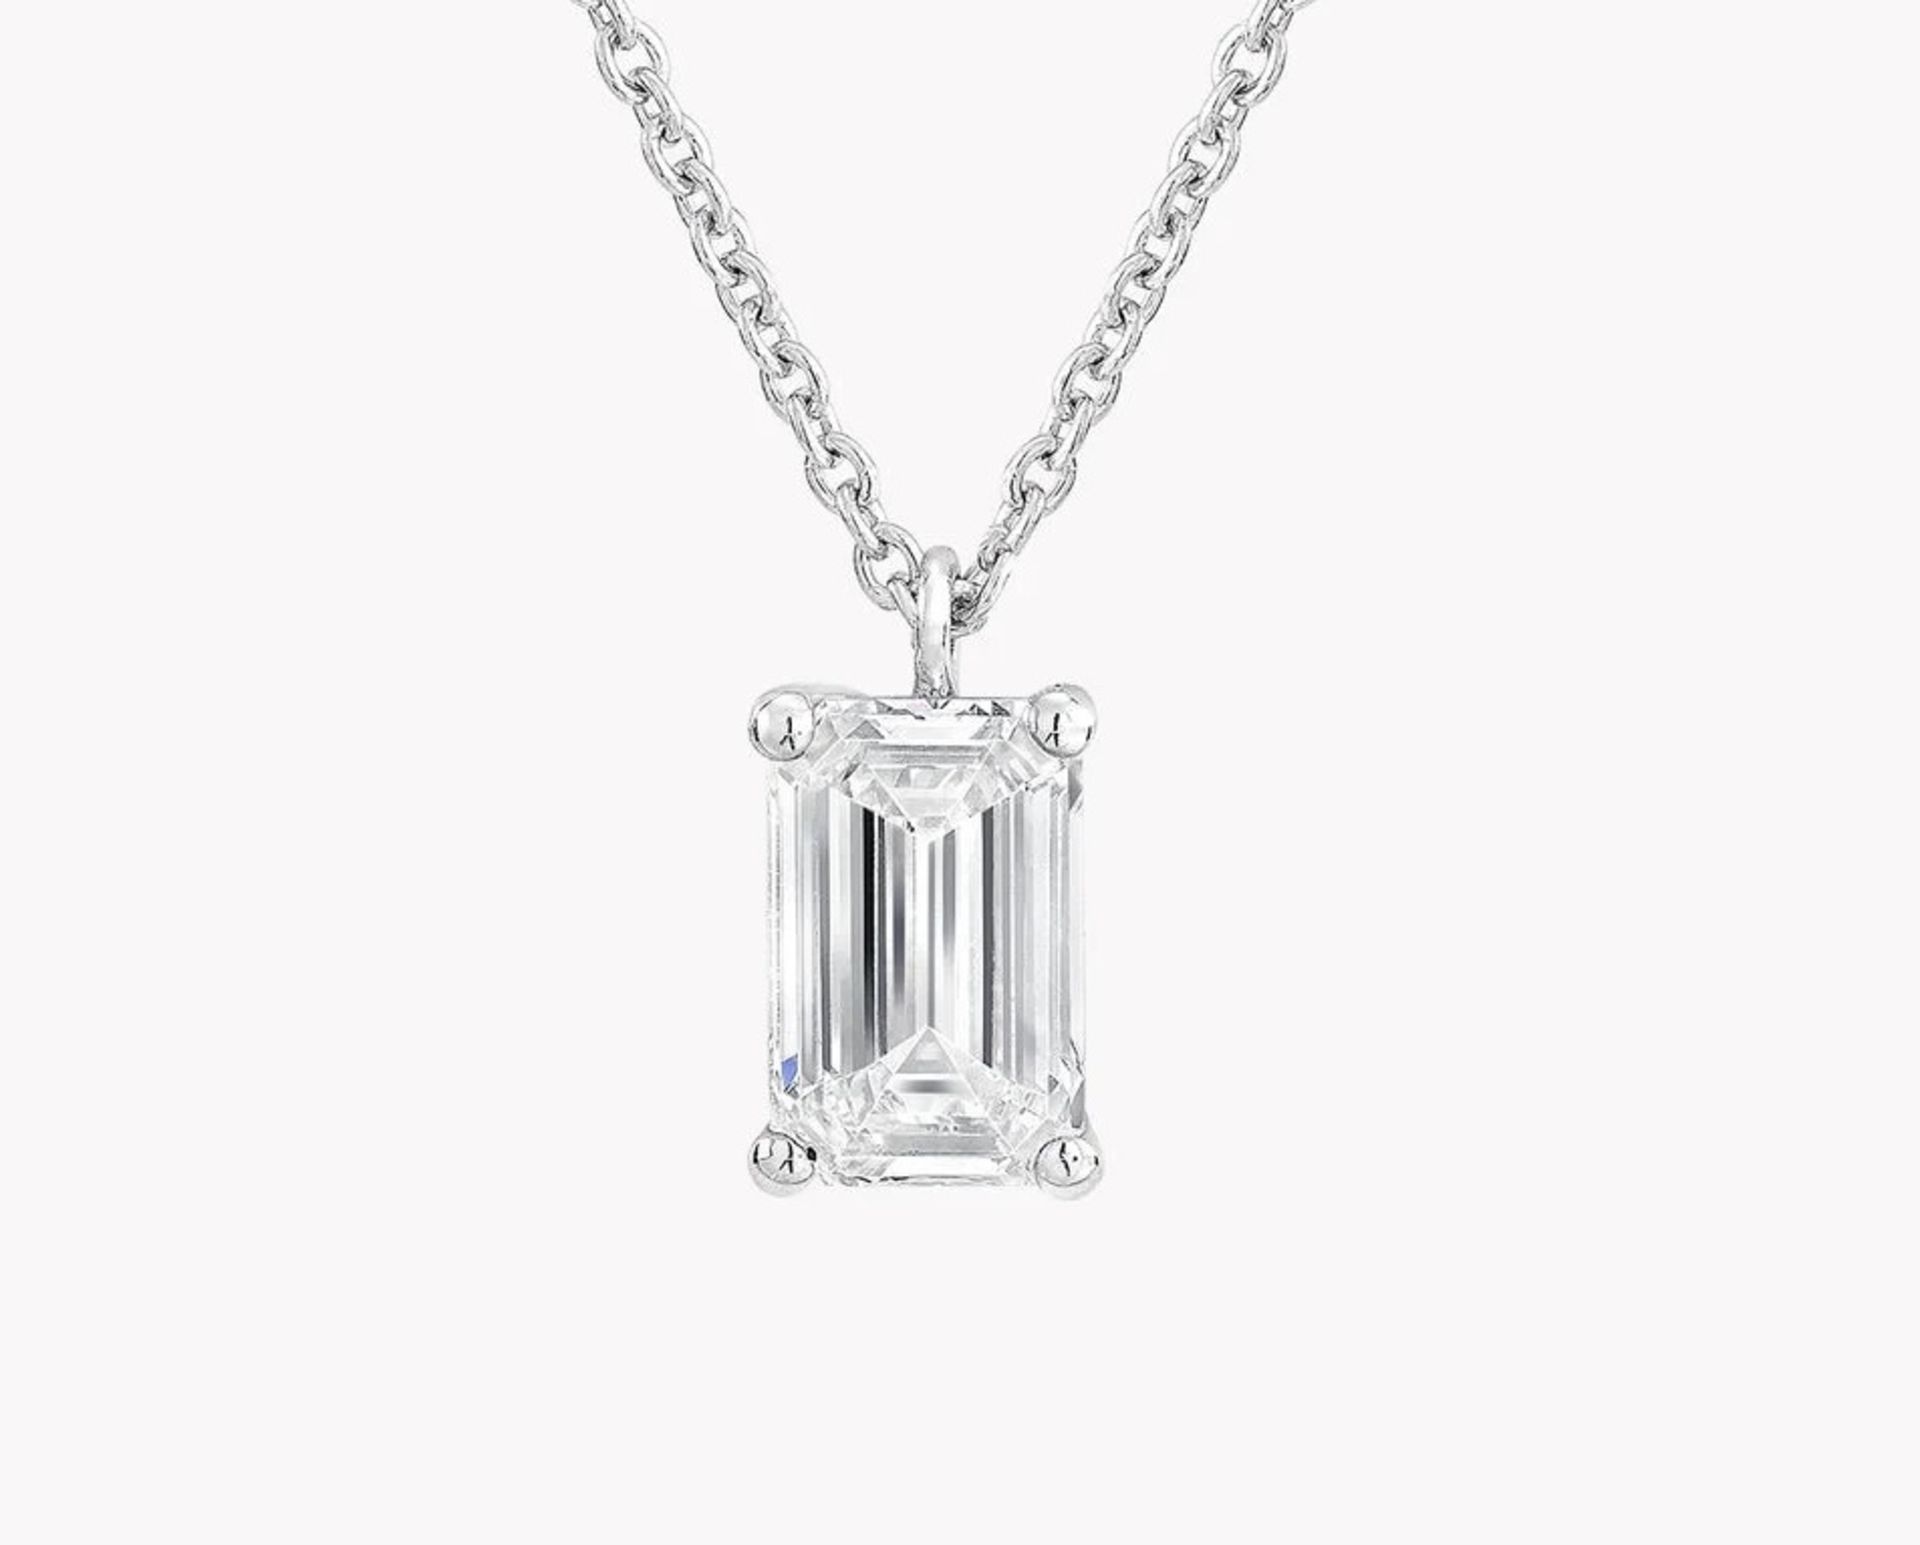 Emerald Cut Diamond 2.00 Carat D Colour VVS2 Clarity - Necklace Pendant - 18kt White Gold -IGI - Image 2 of 3